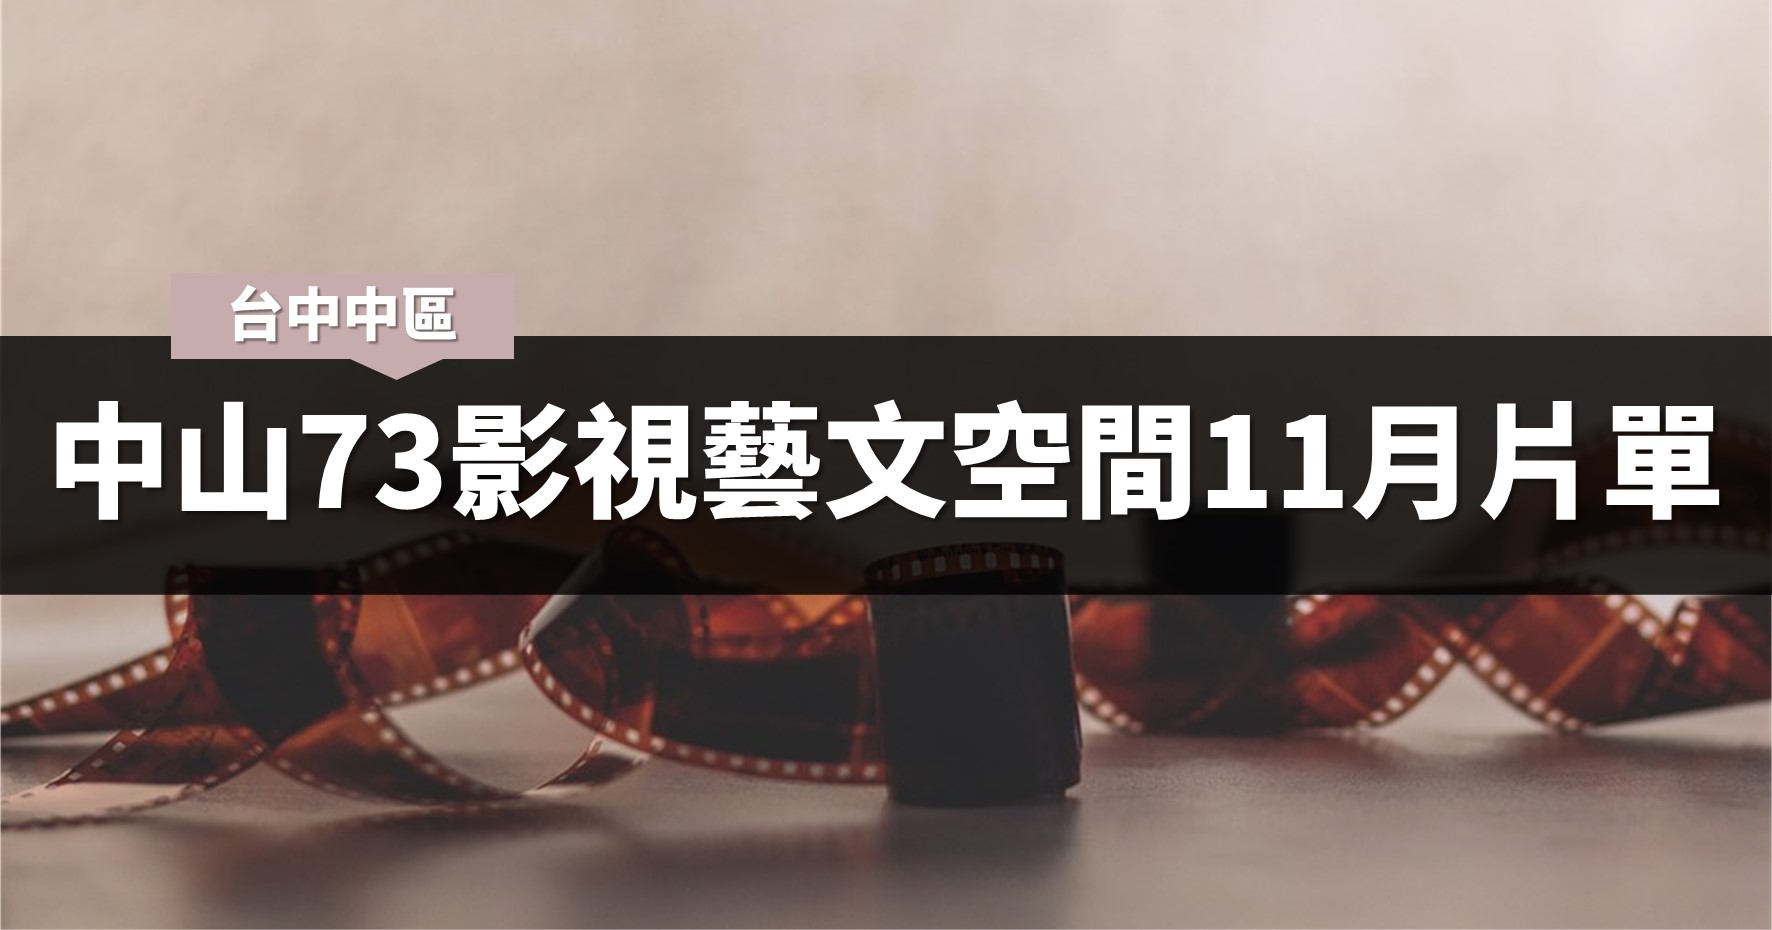 台中活動》中山73影視藝文空間11月片單與臺中國際女性影展 @漫步時光